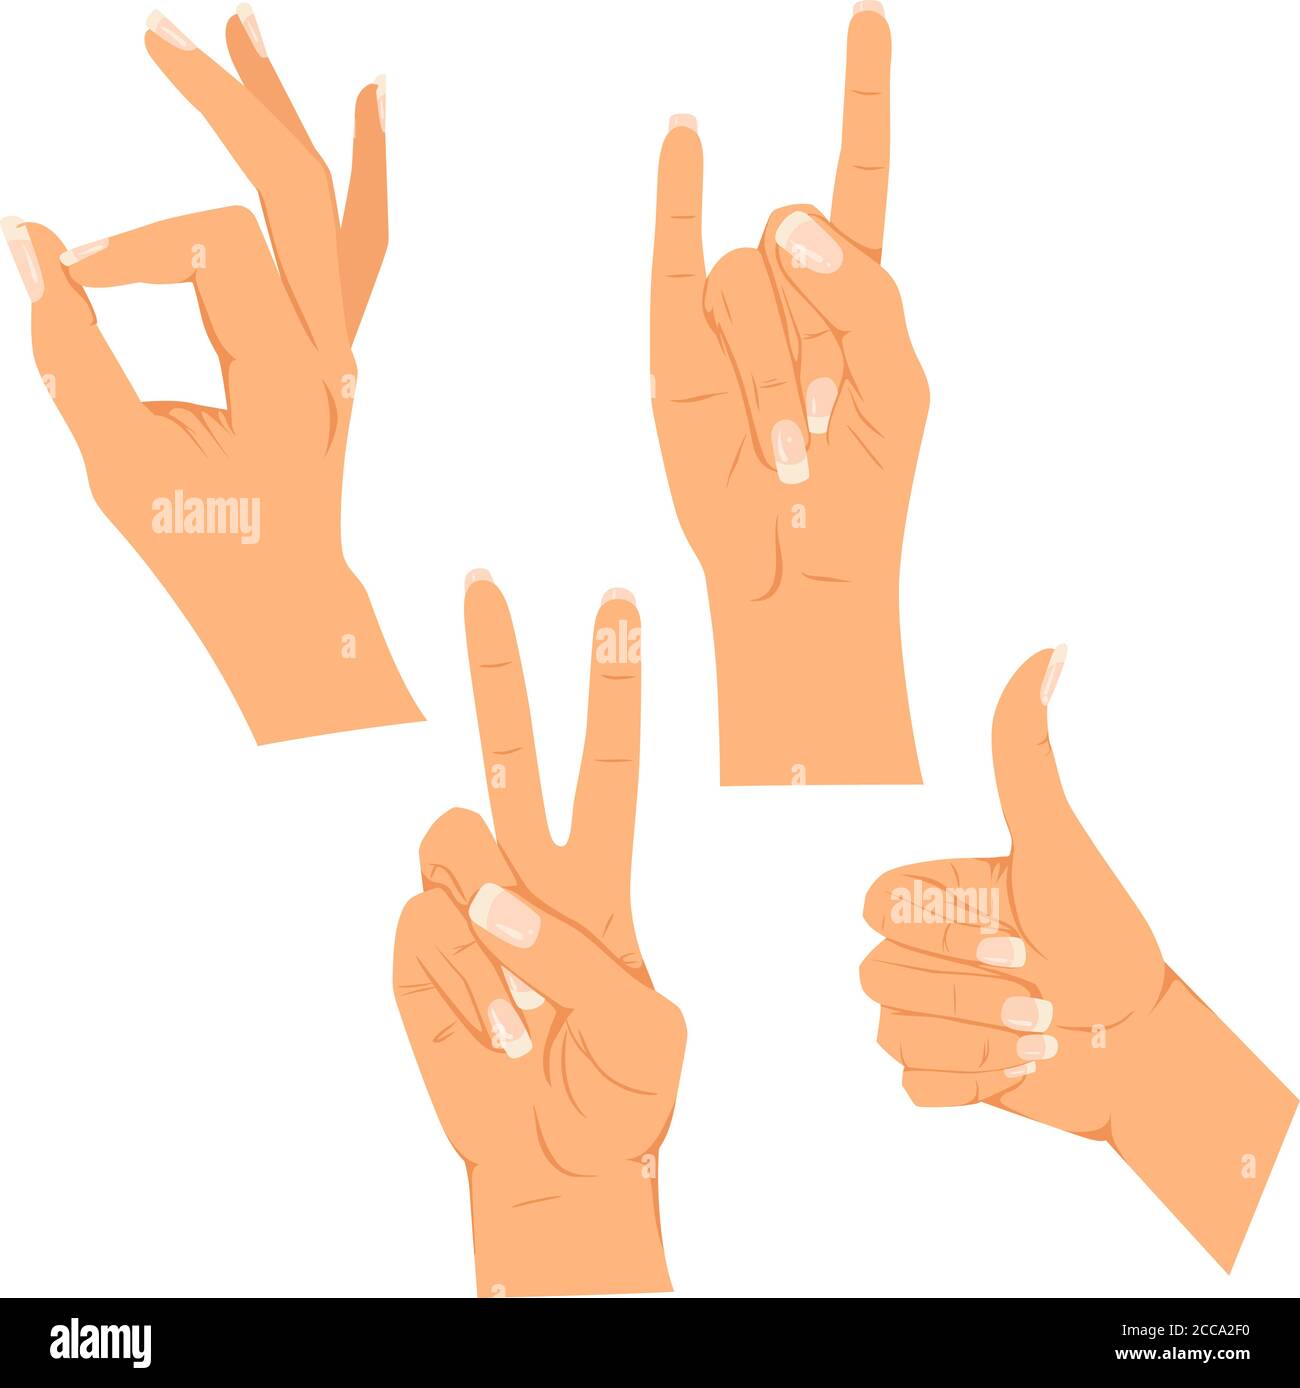 Illustrazione vettoriale di una mano femminile con unghie lunghe. Vari gesti. Impostare isolato su uno sfondo bianco Illustrazione Vettoriale